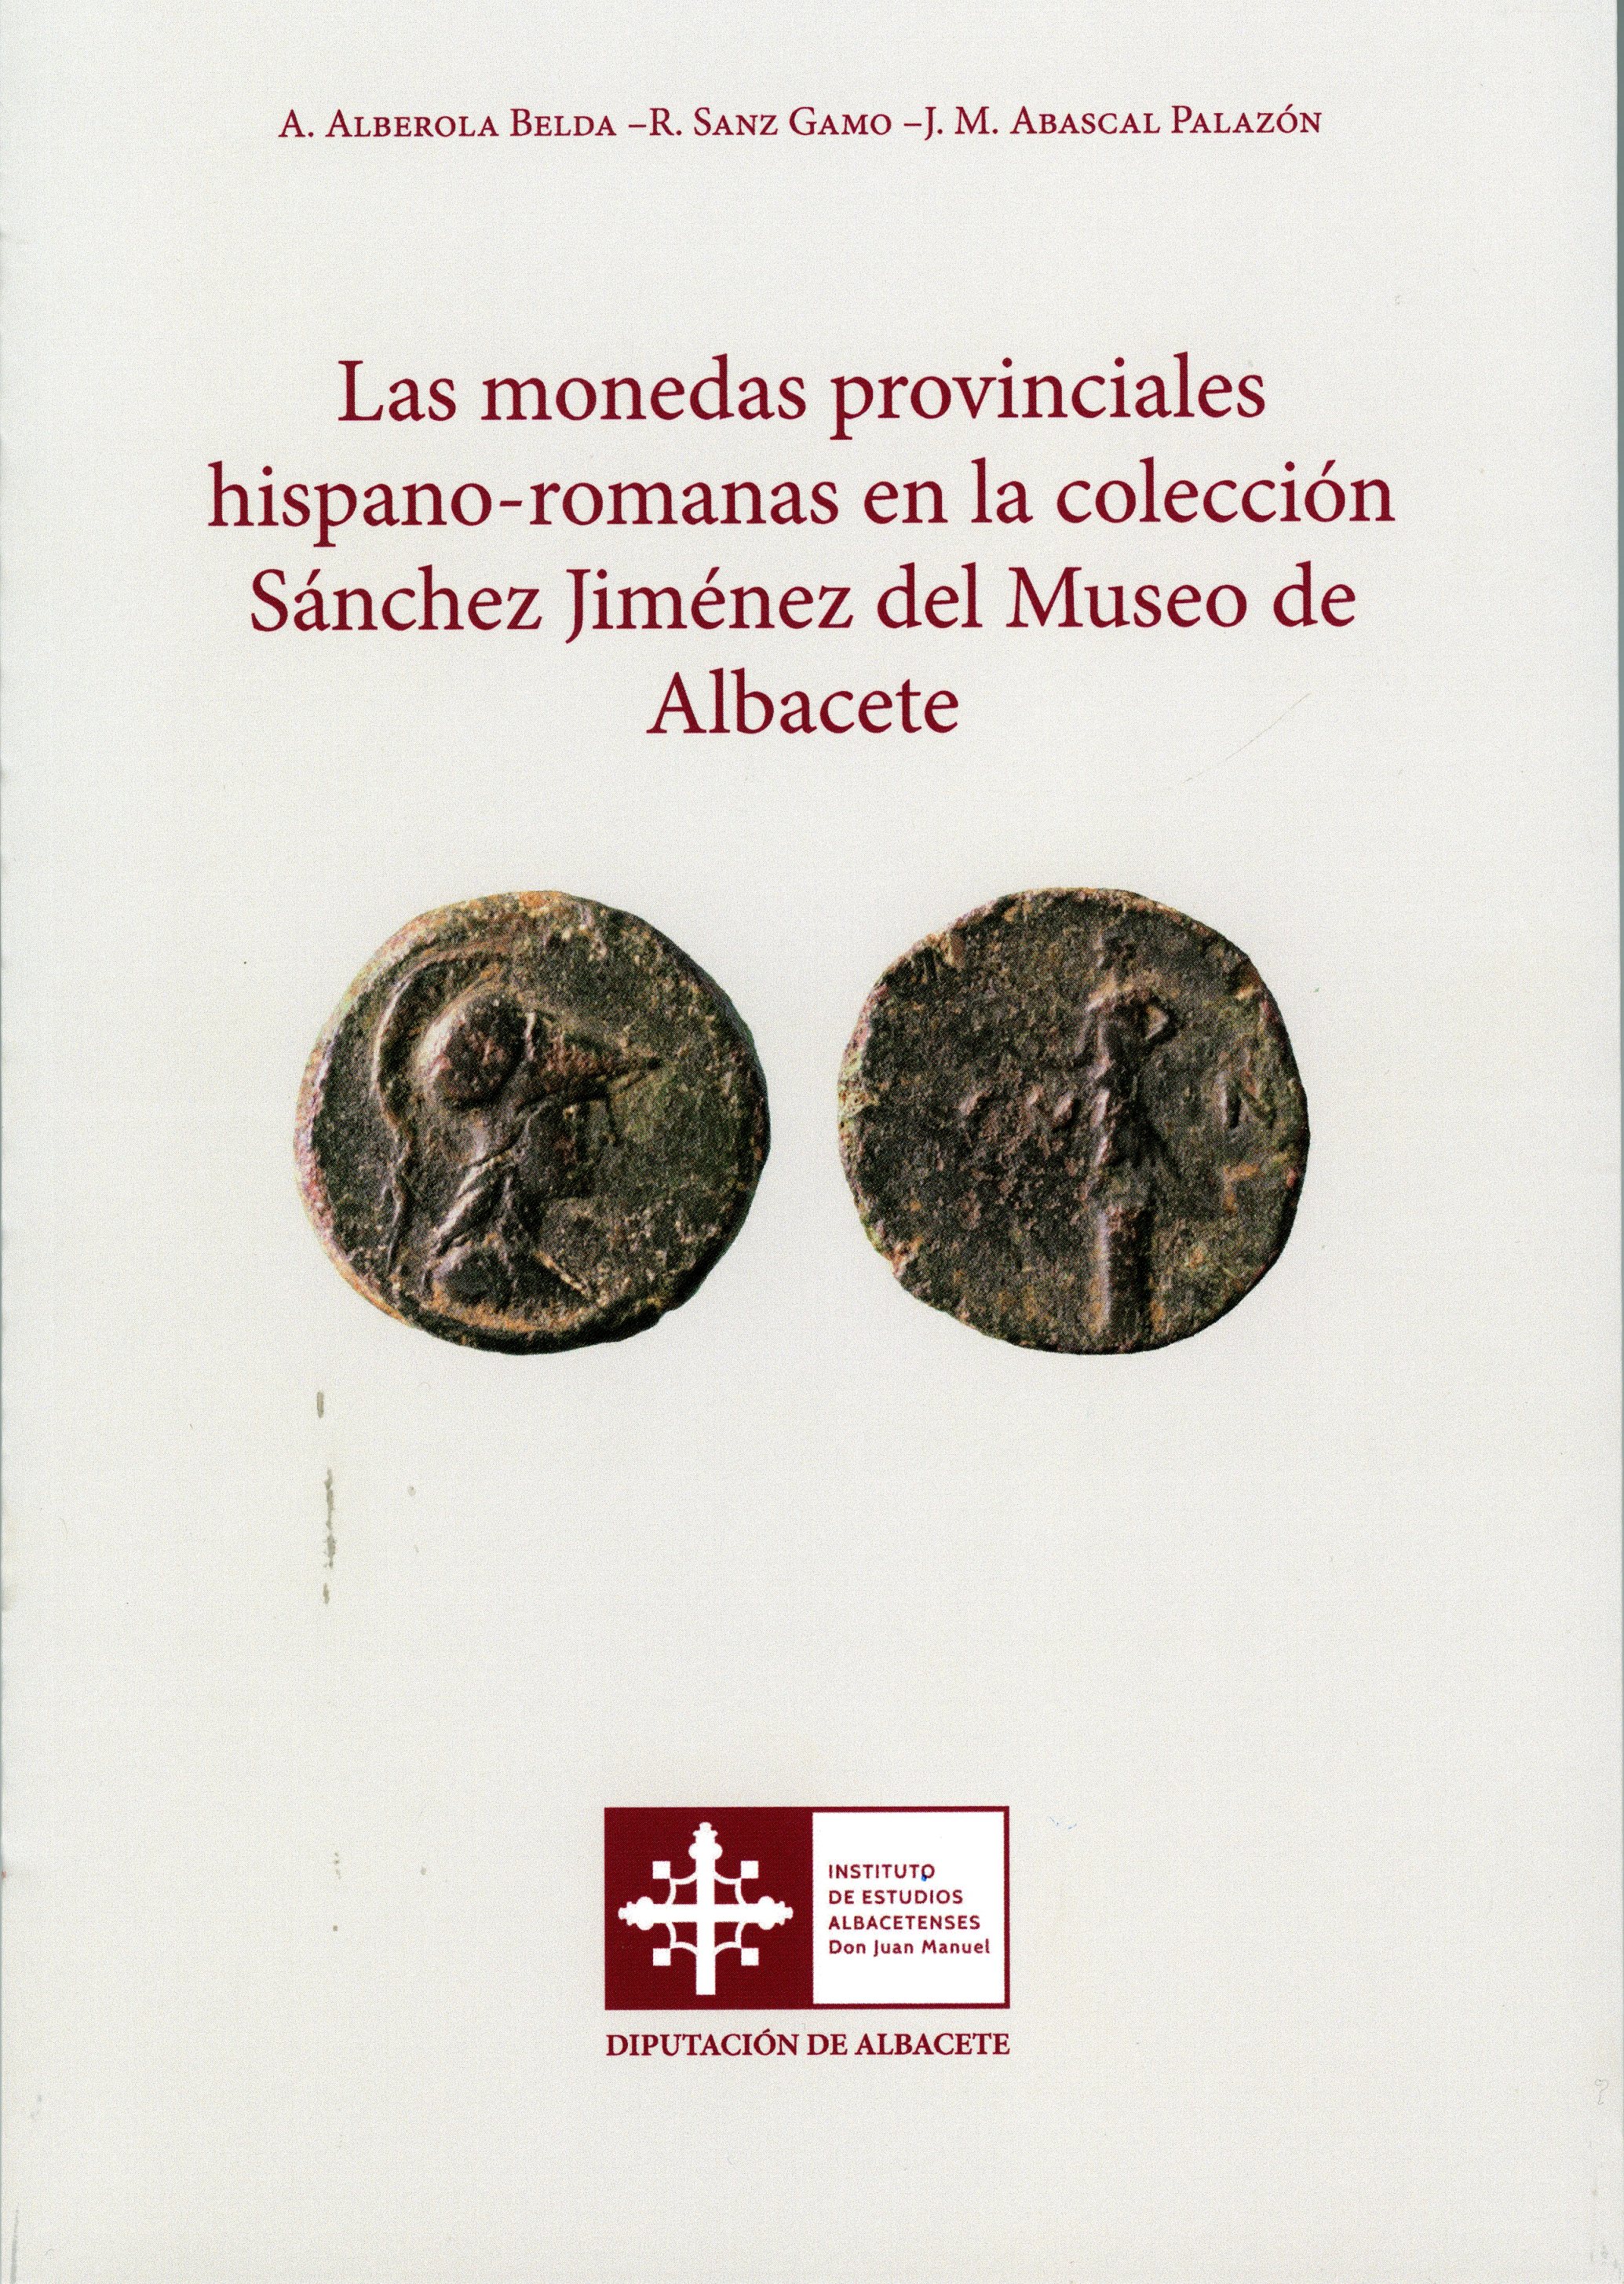 Imagen de portada del libro Las monedas provinciales hispano-romanas en la colección Sánchez Jiménez del Museo de Albacete